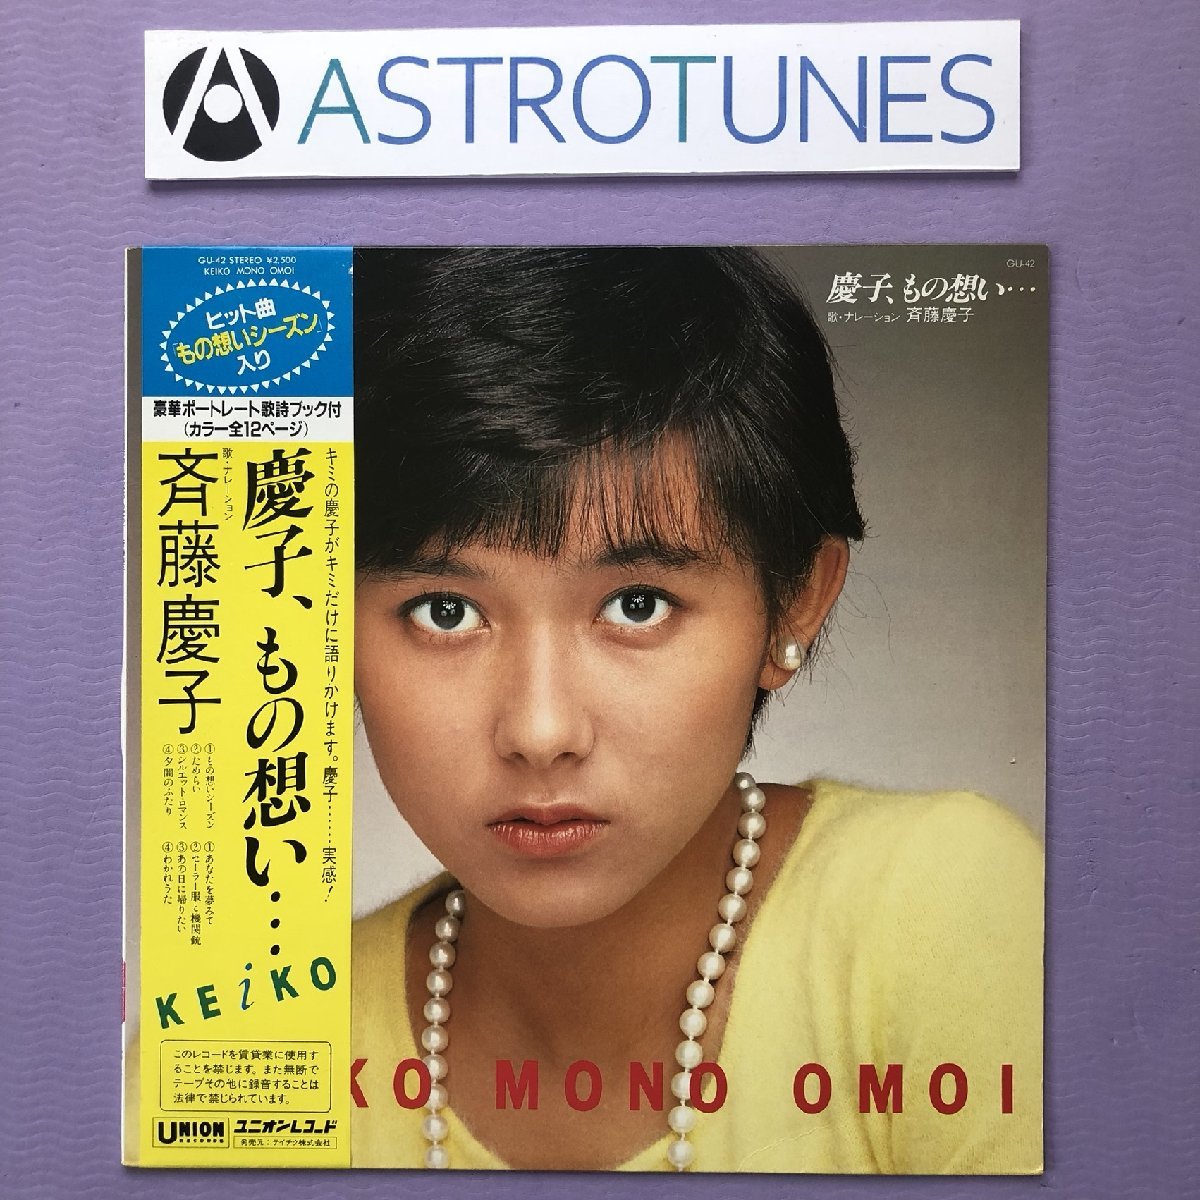 傷なし美盤 美品 斉藤慶子 Keiko Saito 1982年 LPレコード 慶子, もの想い… オリジナルリリース盤 帯付 J-Pop 12P 写真ブックレット, ロック, ポップス, さ行, その他